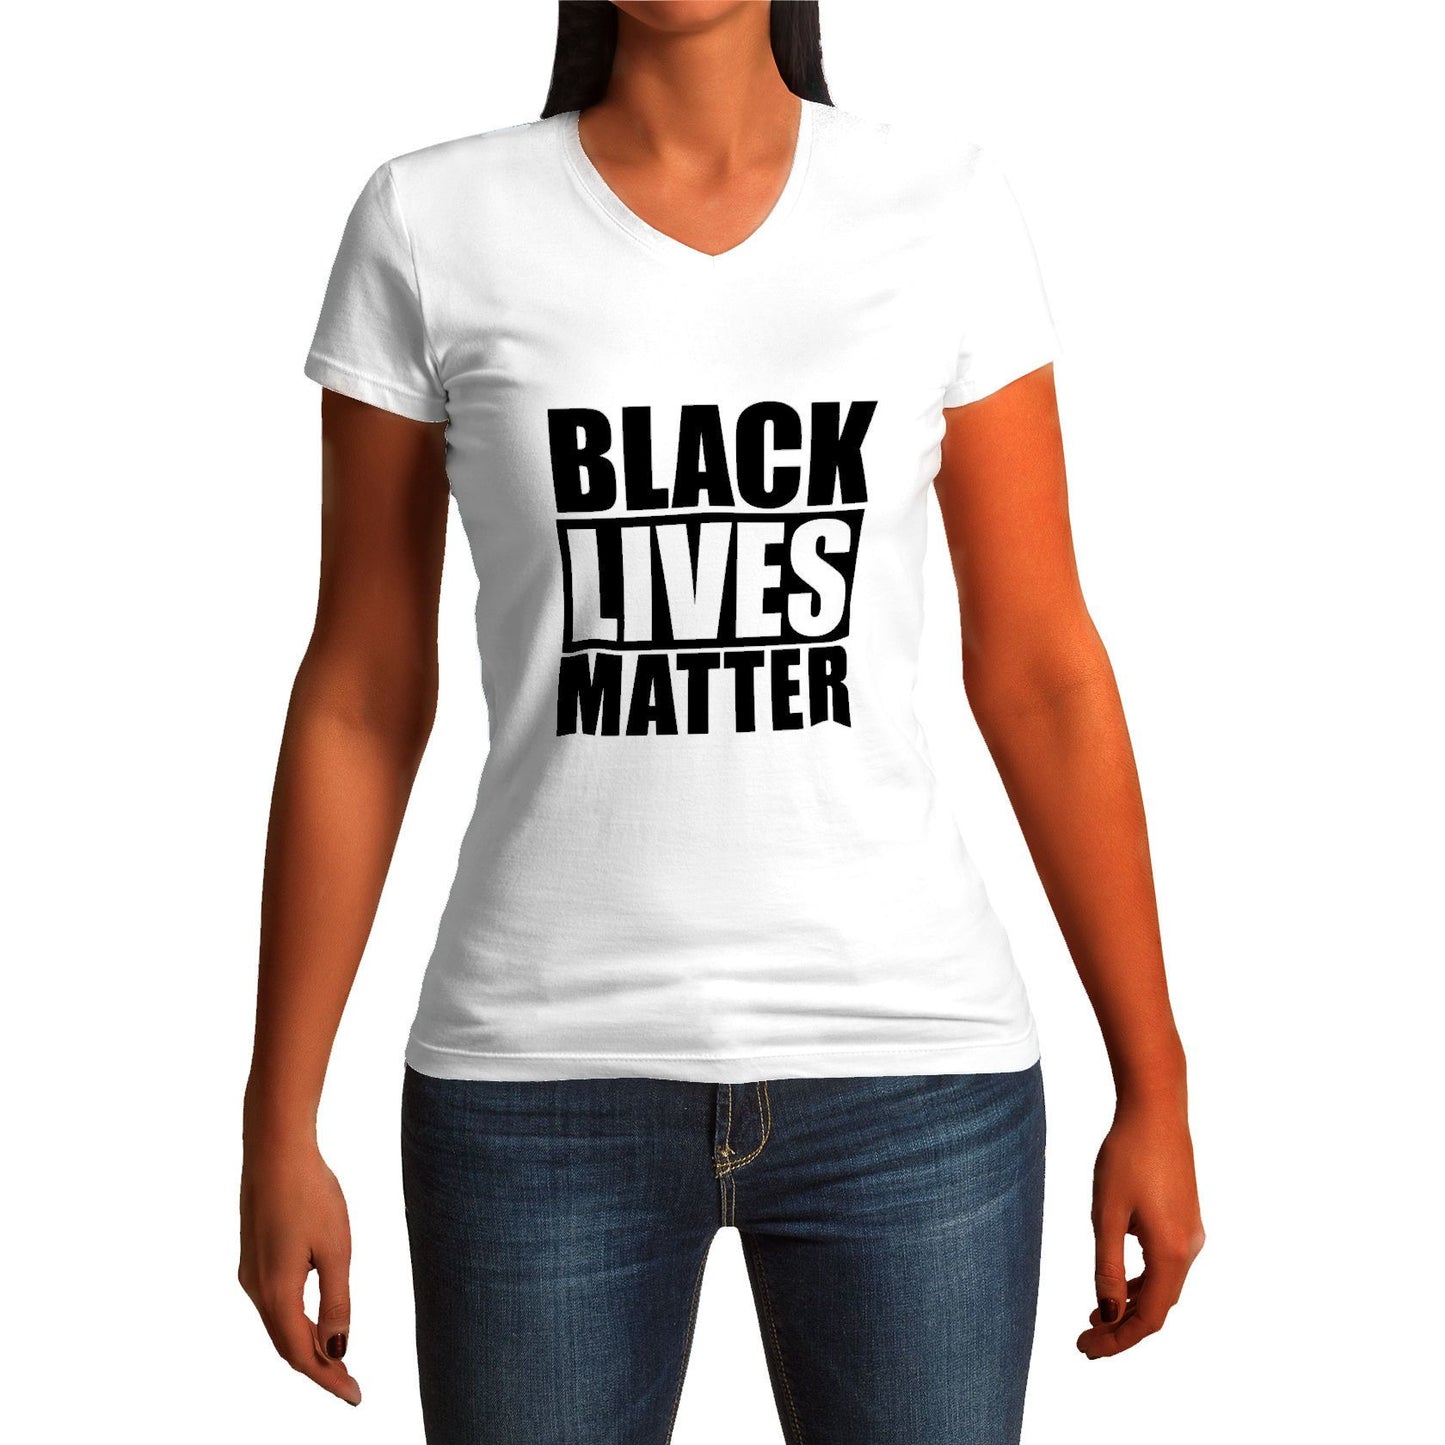 Black Live Matter Women's T-Shirt